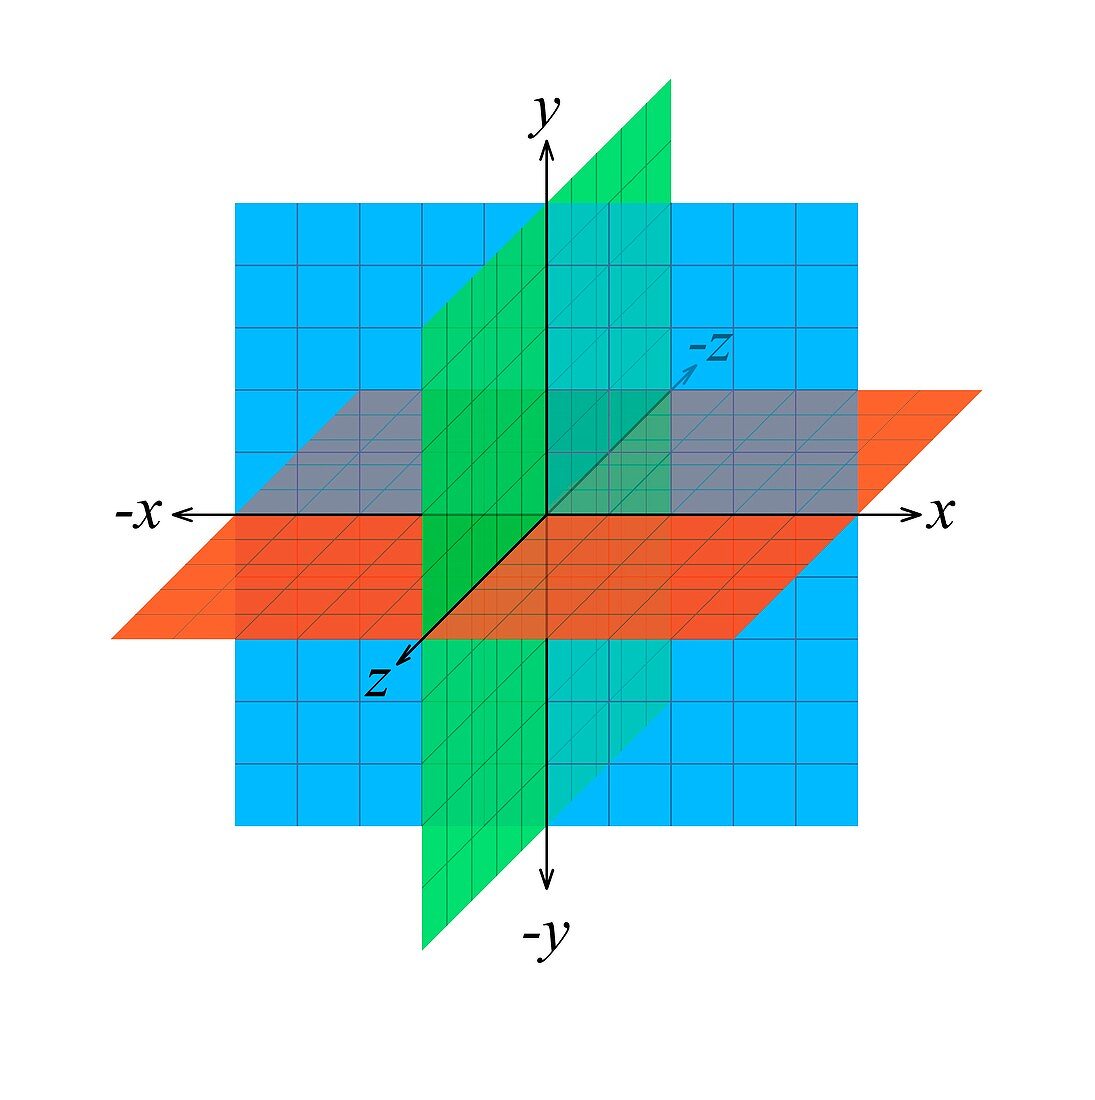 Three-dimensional Euclidean space